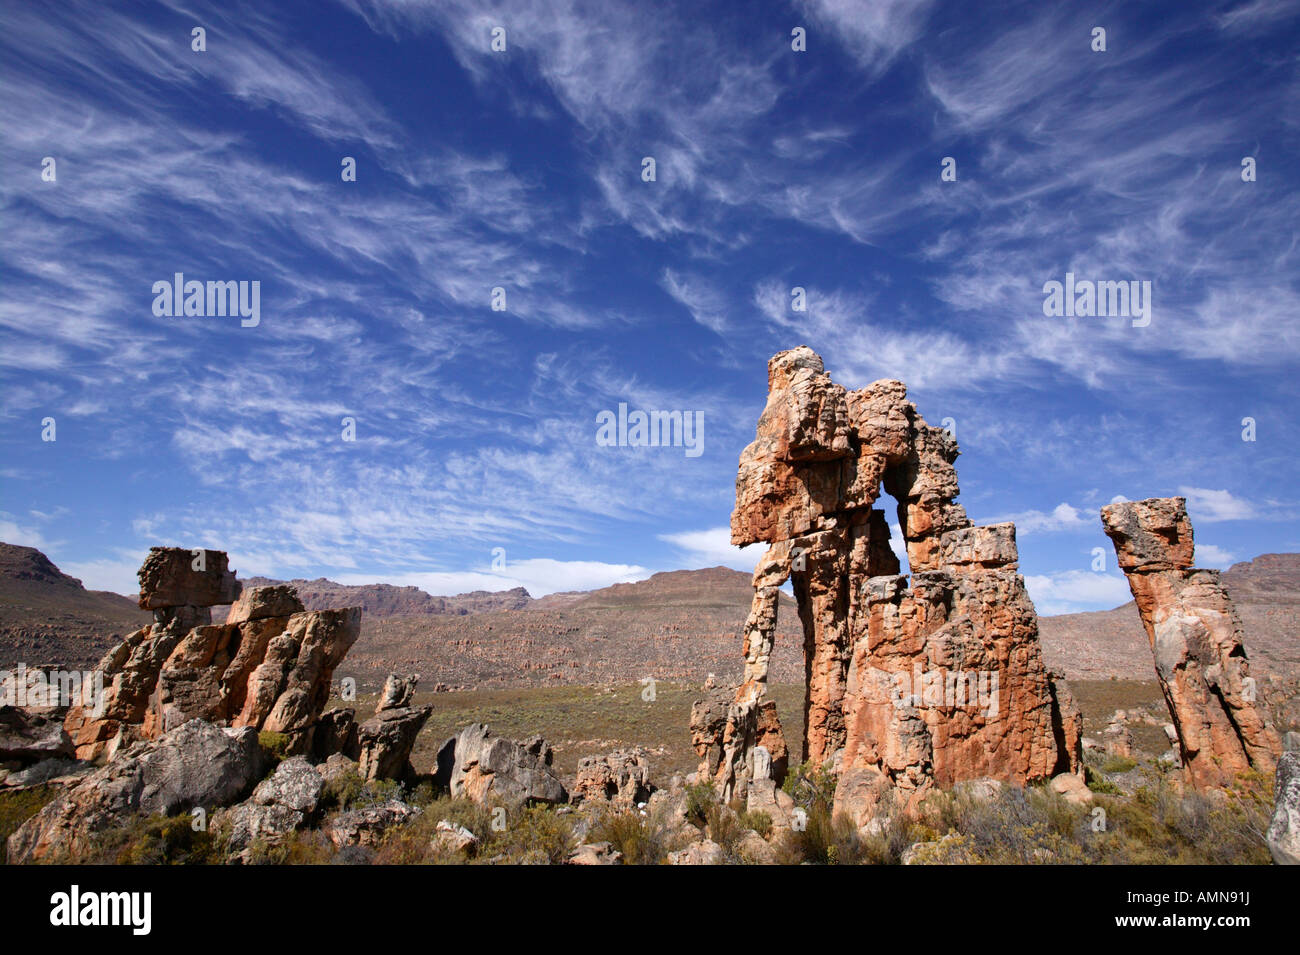 Malerische Aussicht auf erodierten Sandstein Felsformationen im Hinblick auf einen entfernten Grat in den Cedarberg Bergen Stockfoto